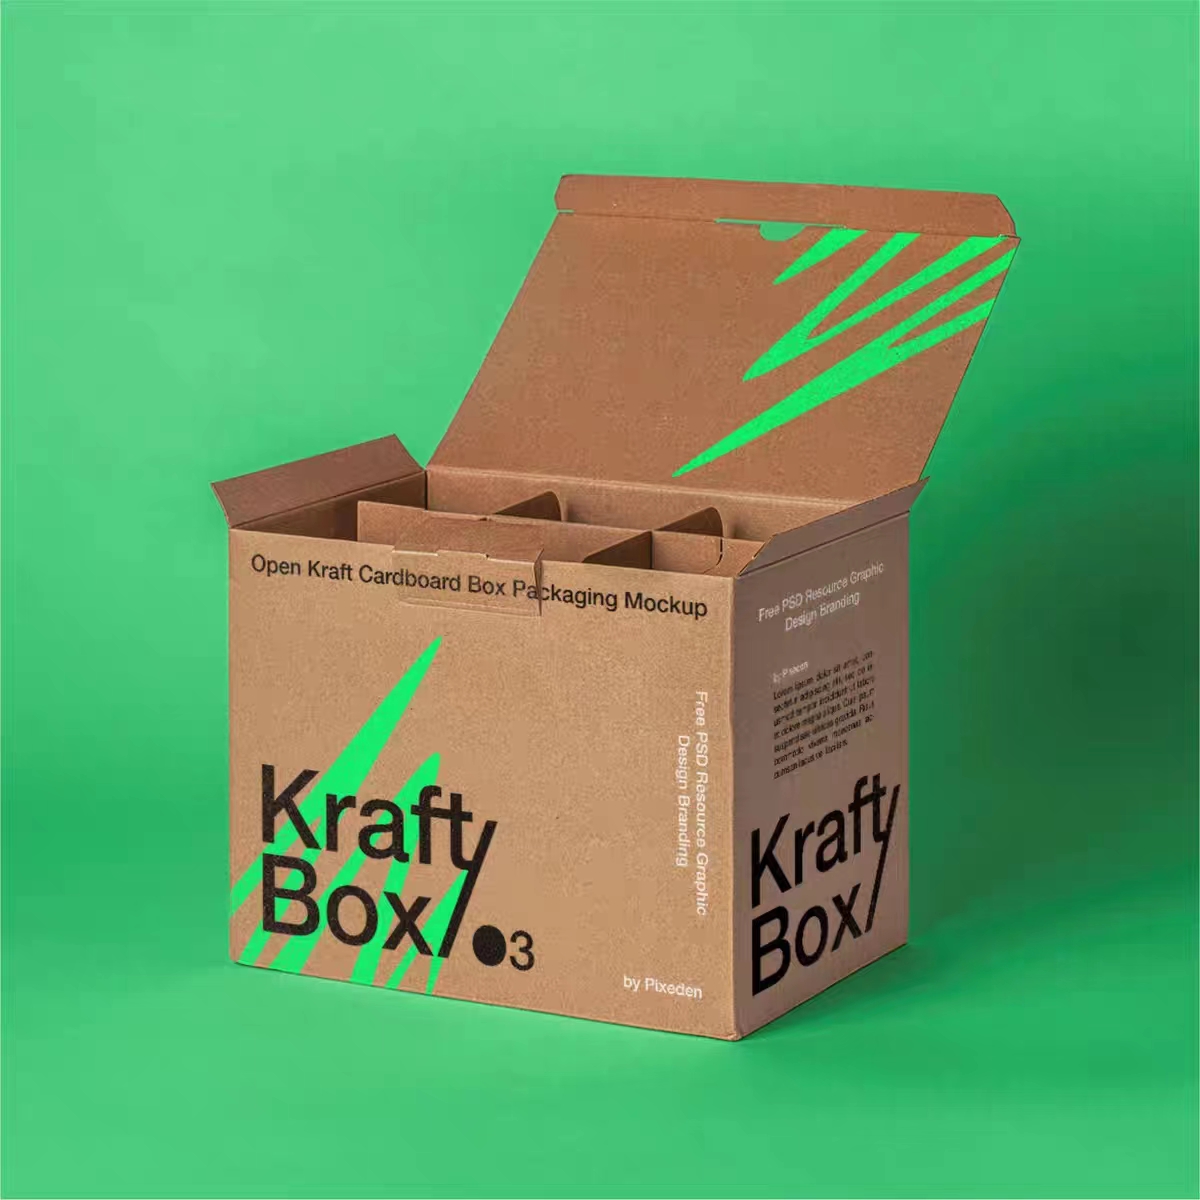 Тұрақты және экологиялық таза өнімдерге арналған Kraft қаптамасының артықшылықтары